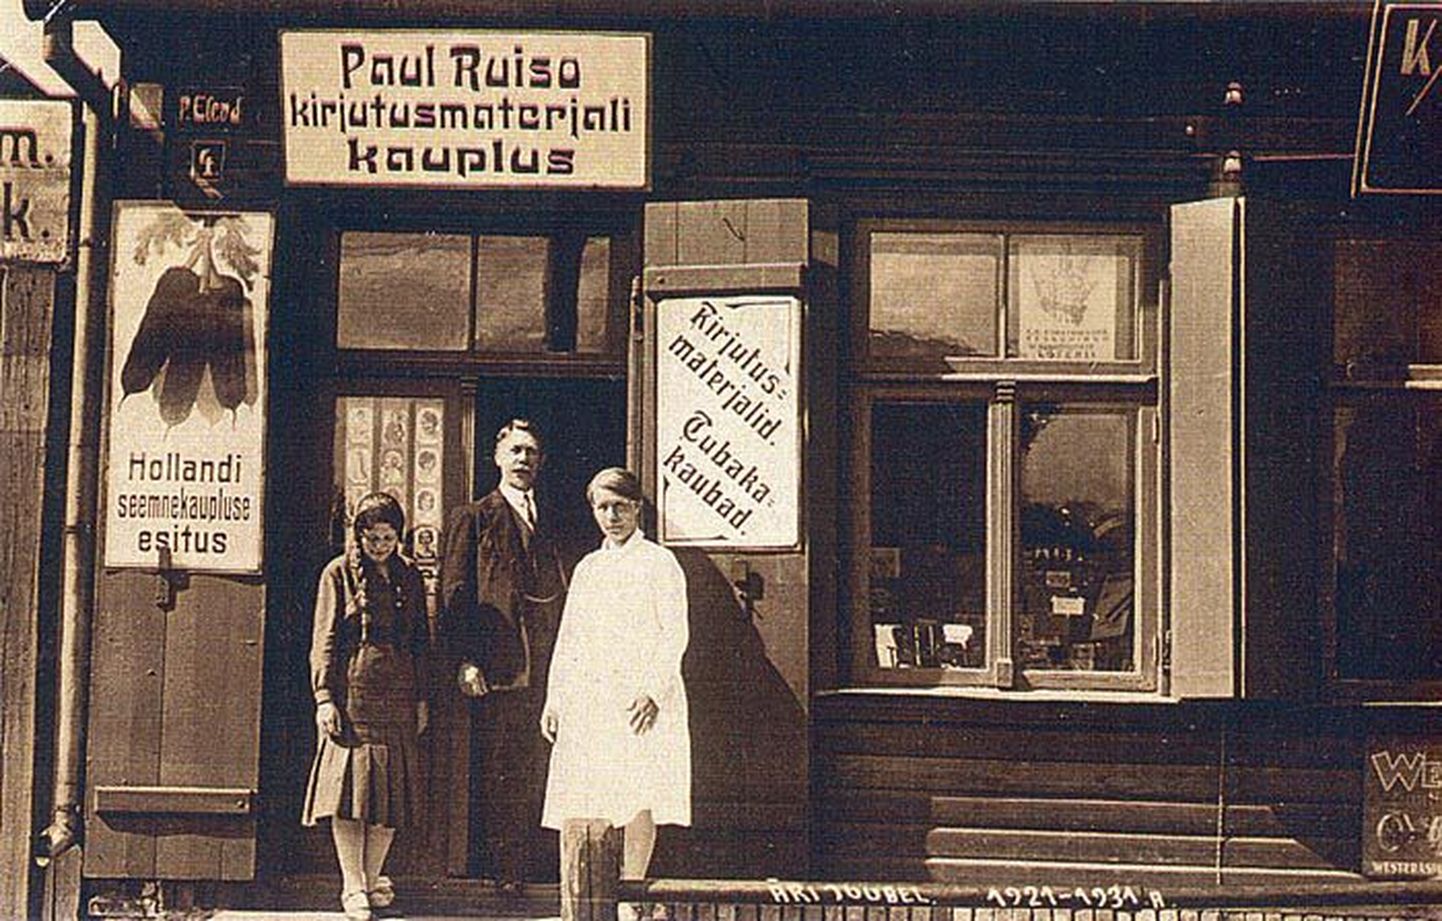 Paul Ruiso kaupluse asemel on nüüd Tallinna maanteel kortermajad. 

Olaf Esna erakogu